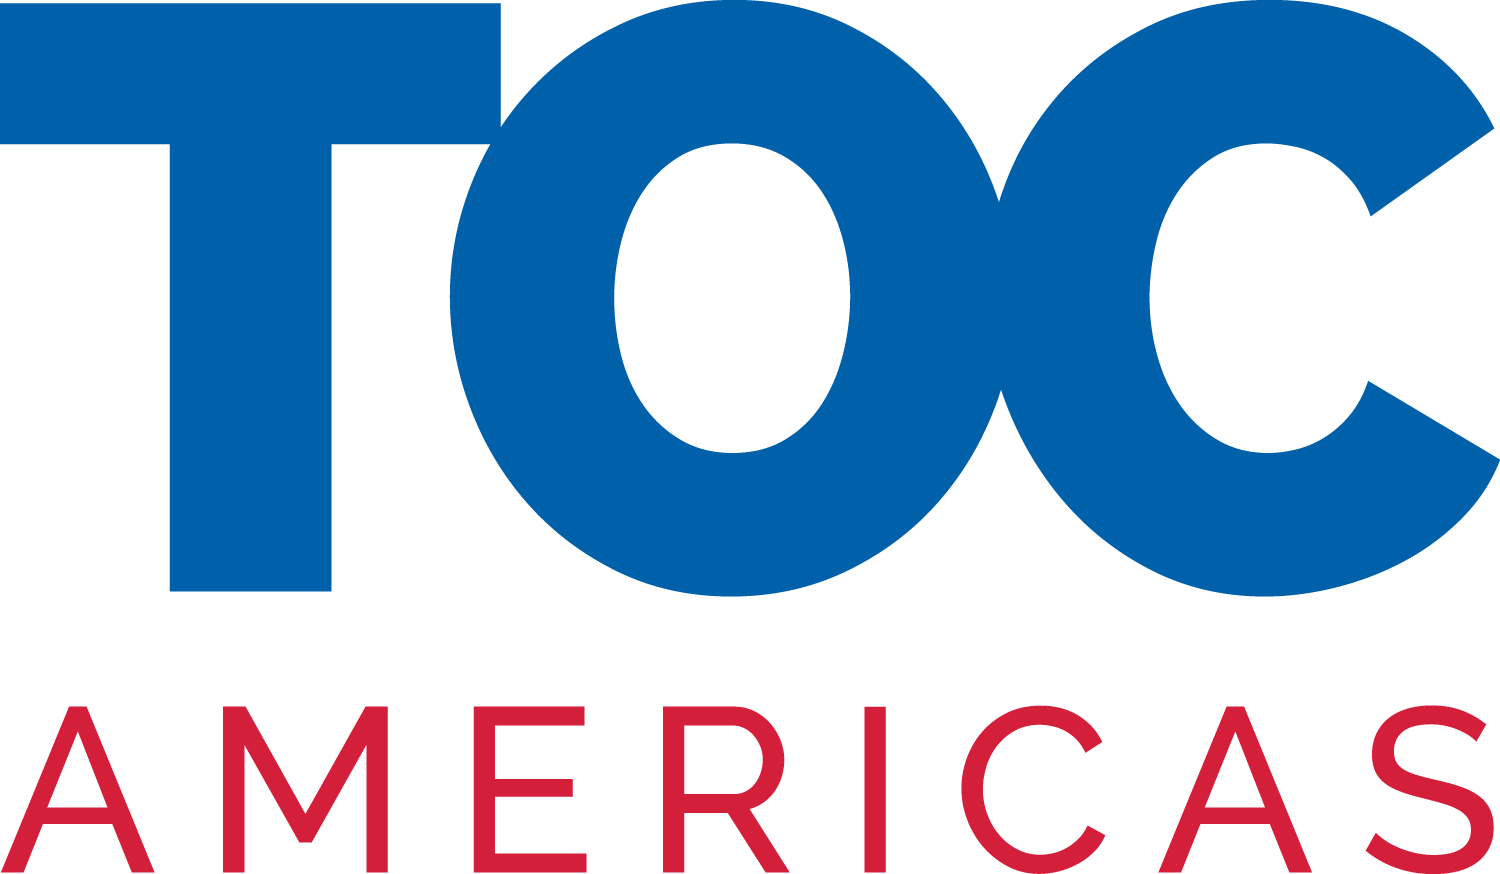 TOC Americas